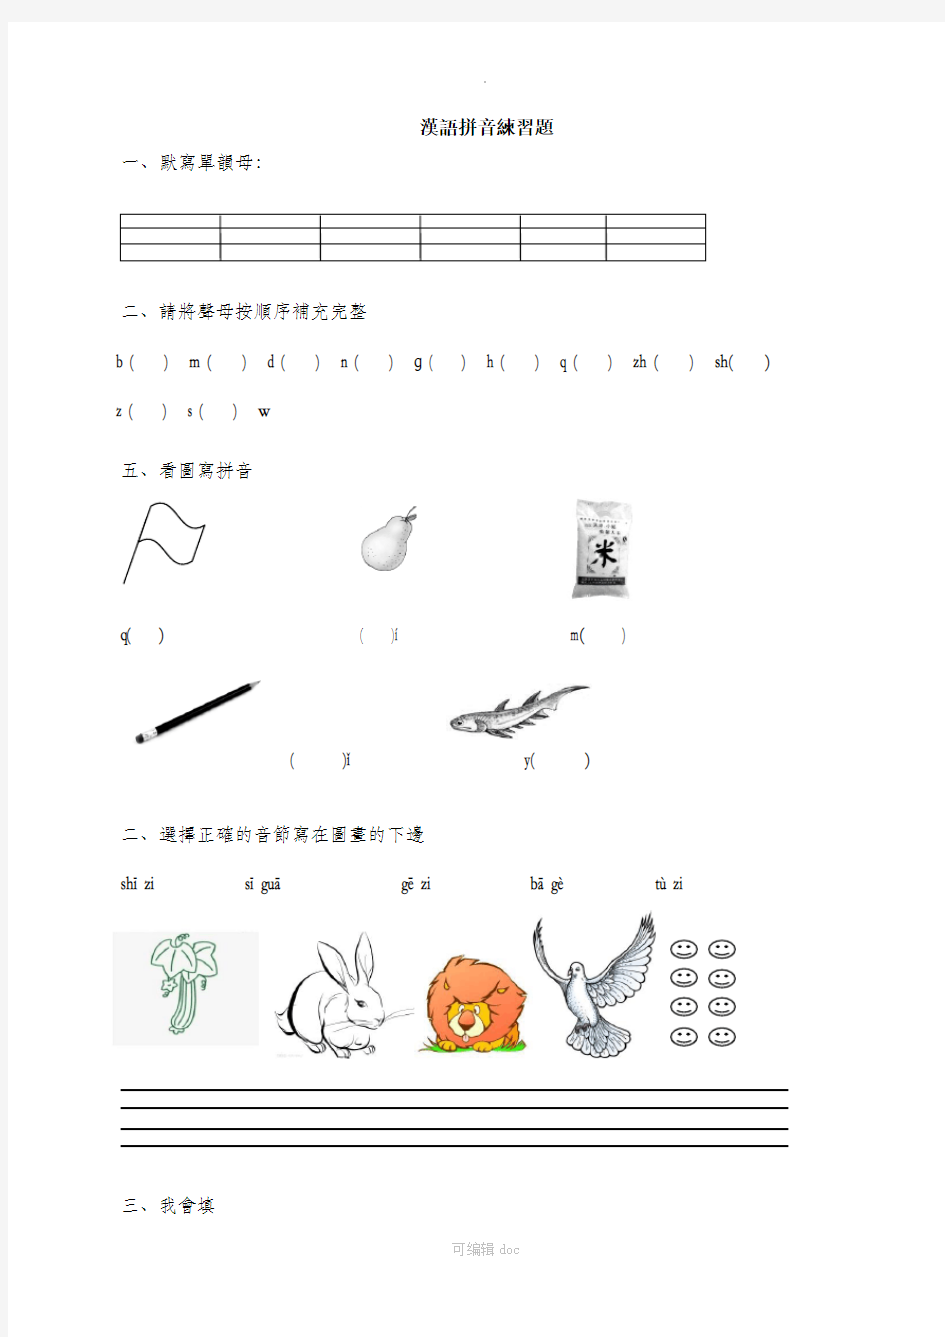 一年级汉语拼音练习题(声母、单韵母)